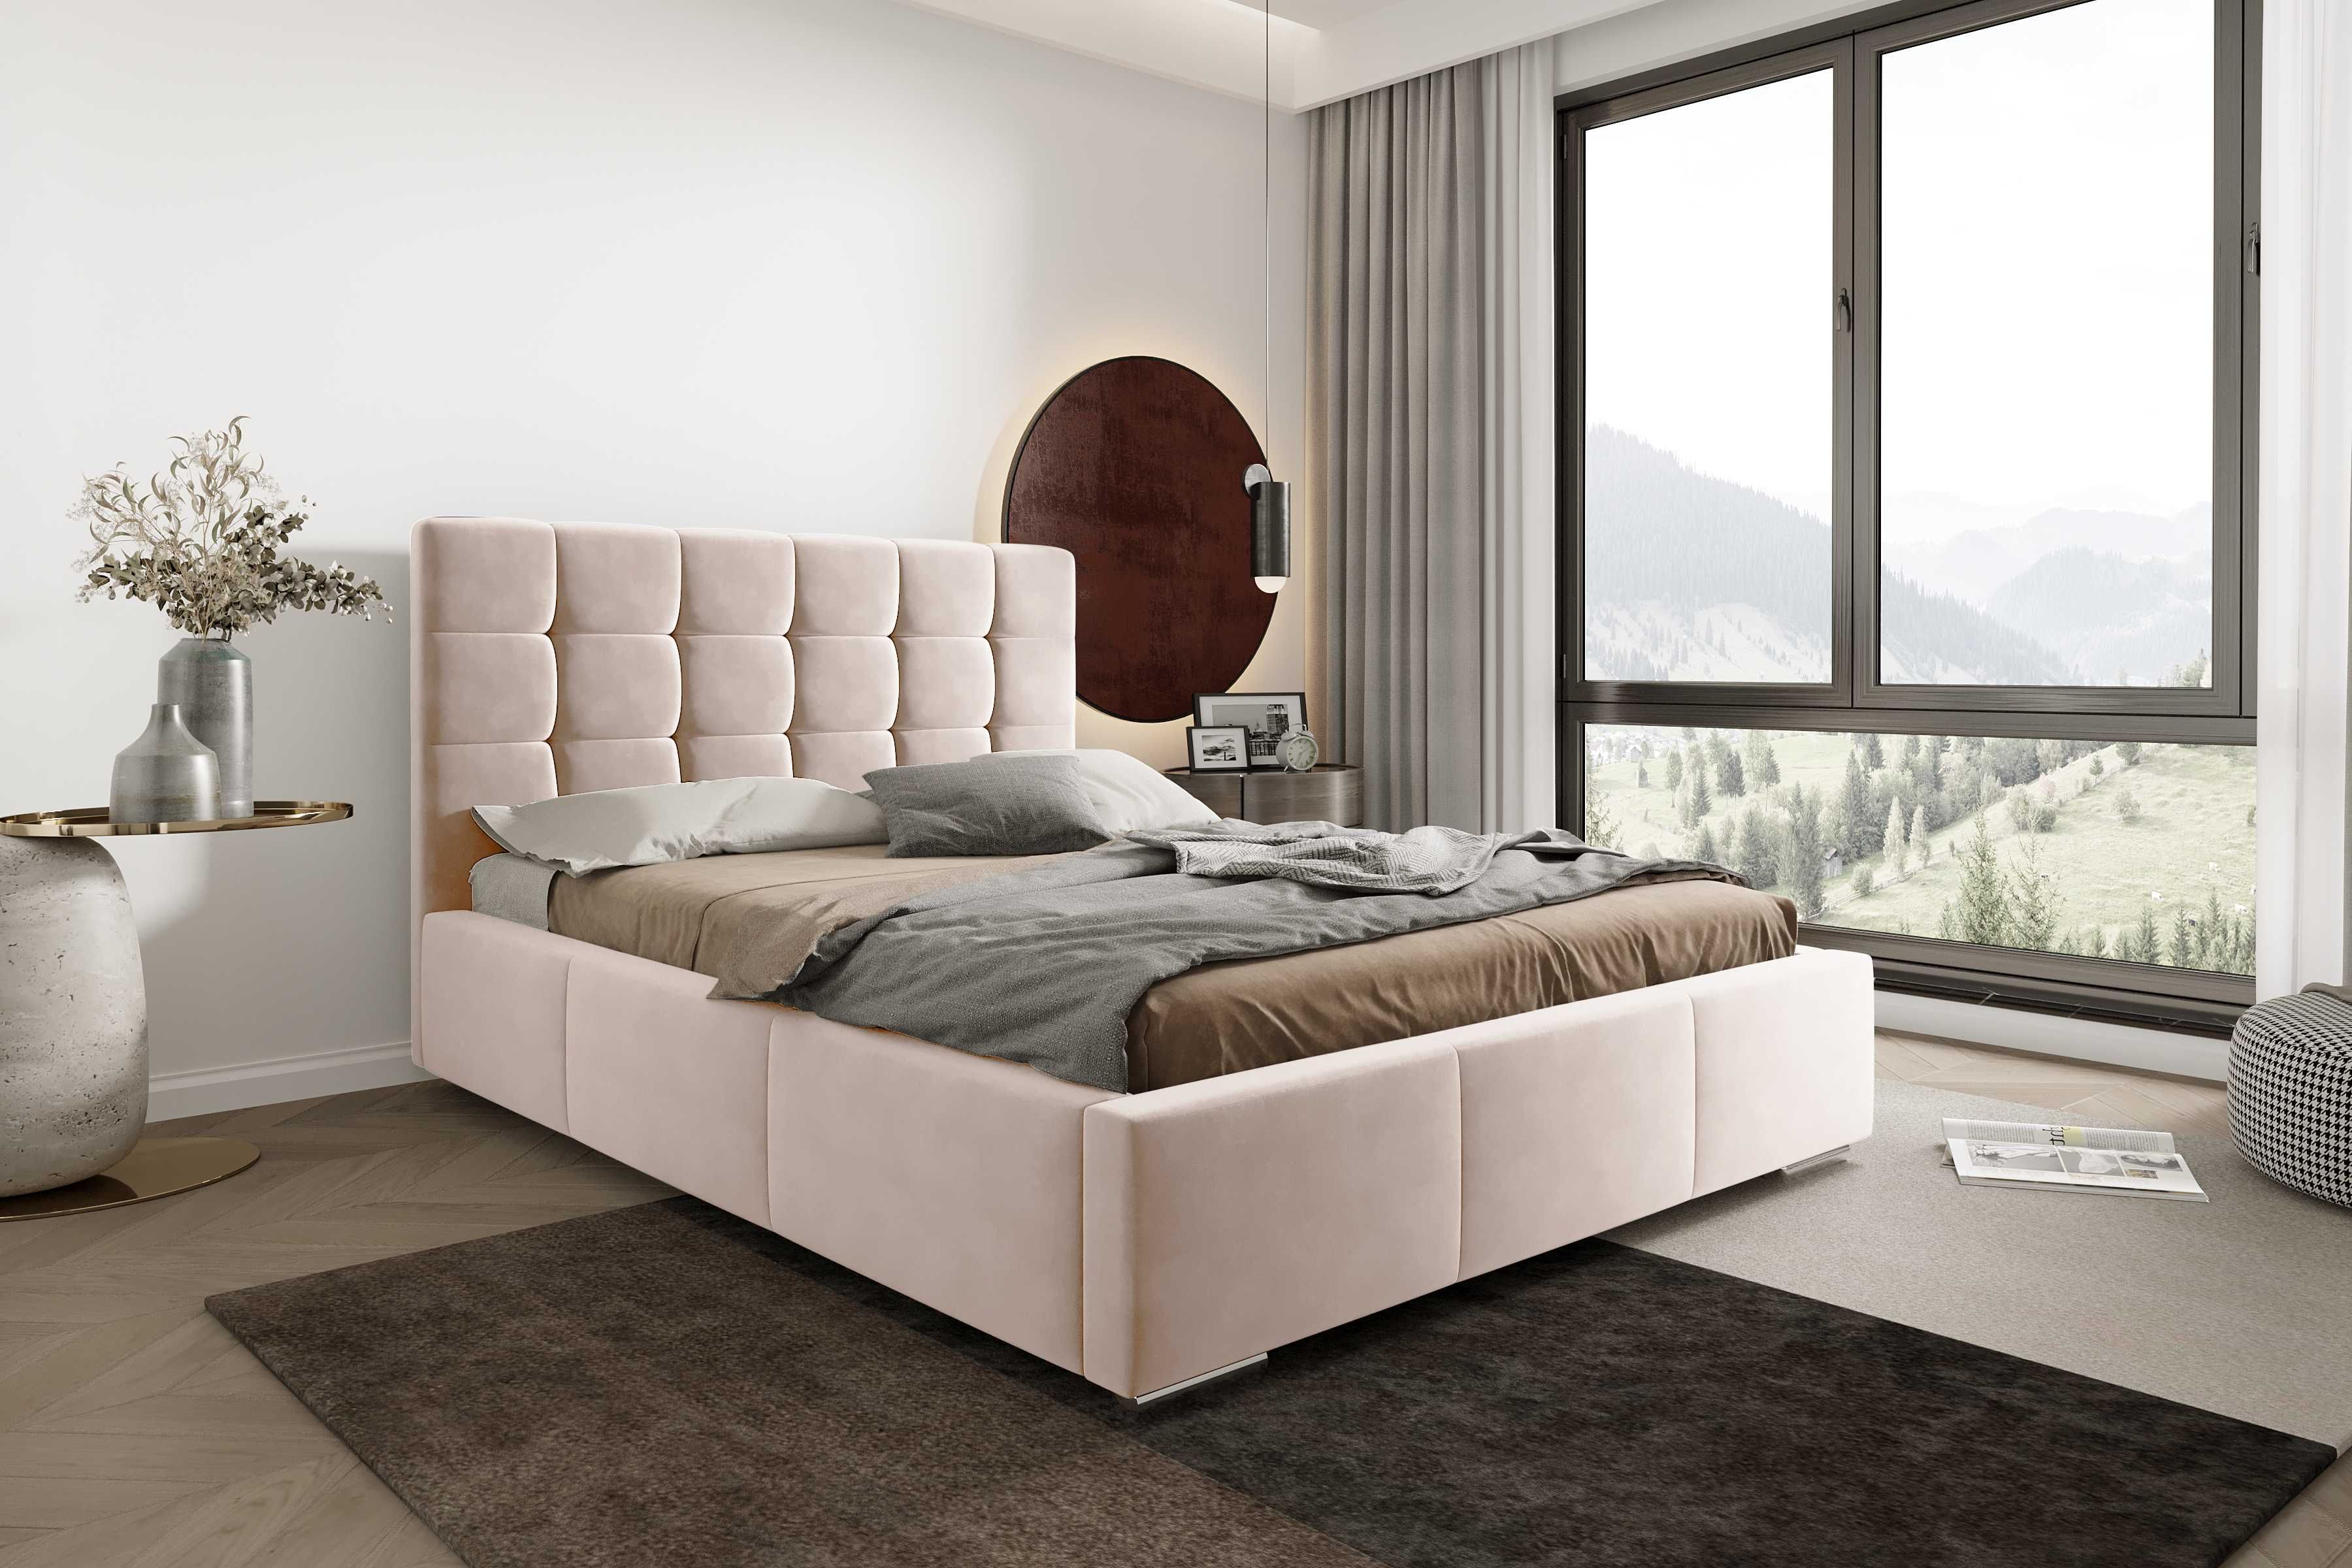 Łóżko sypialniane tapicerowane PALERMO ze stelażem prosto od producent